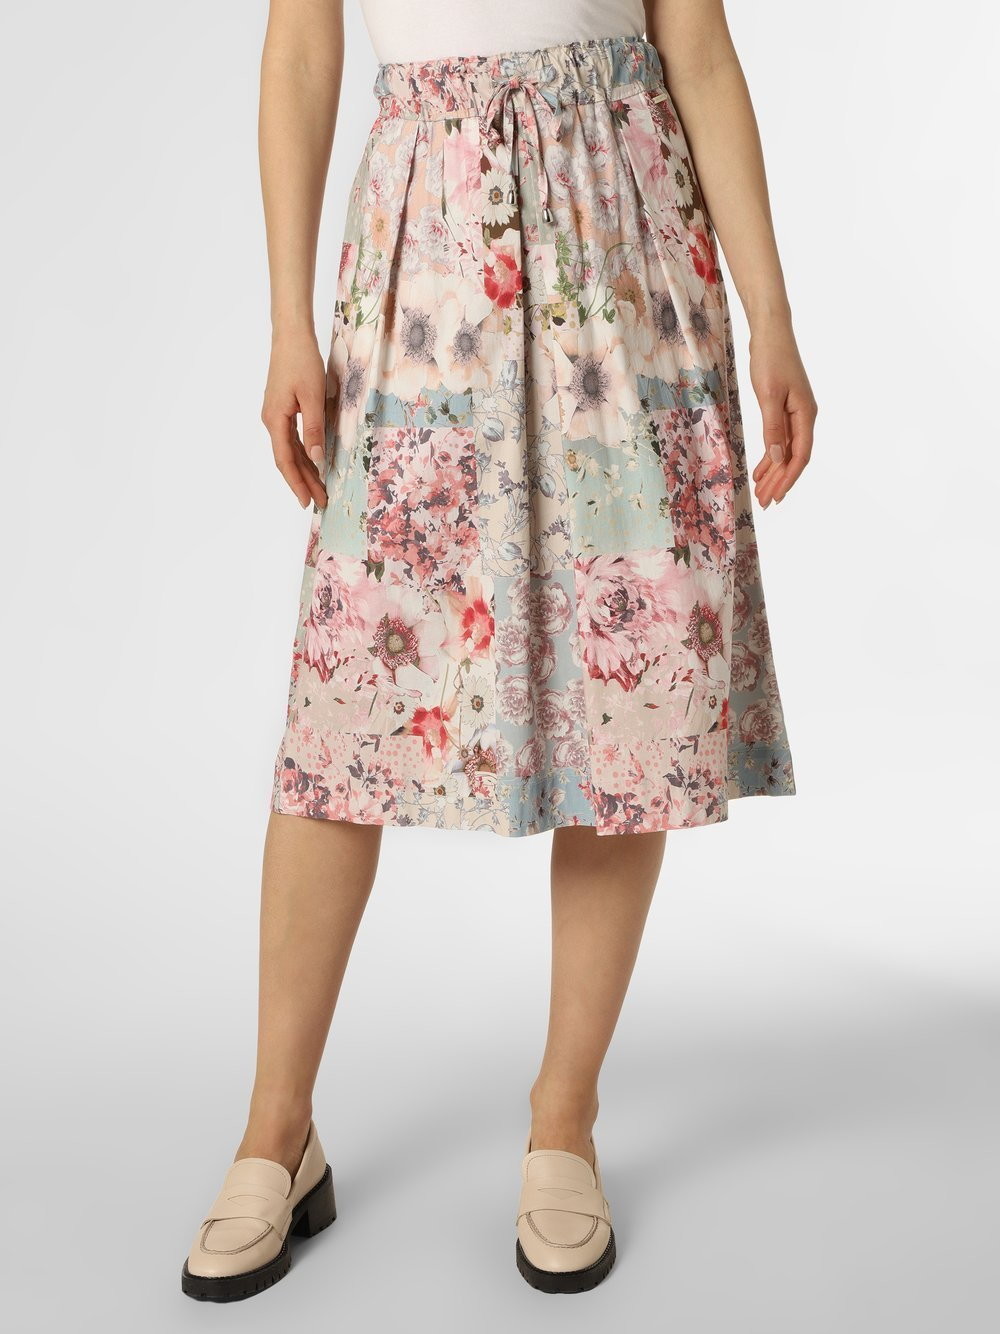 Apriori Apriori - Spódnica damska, różowy|wielokolorowy